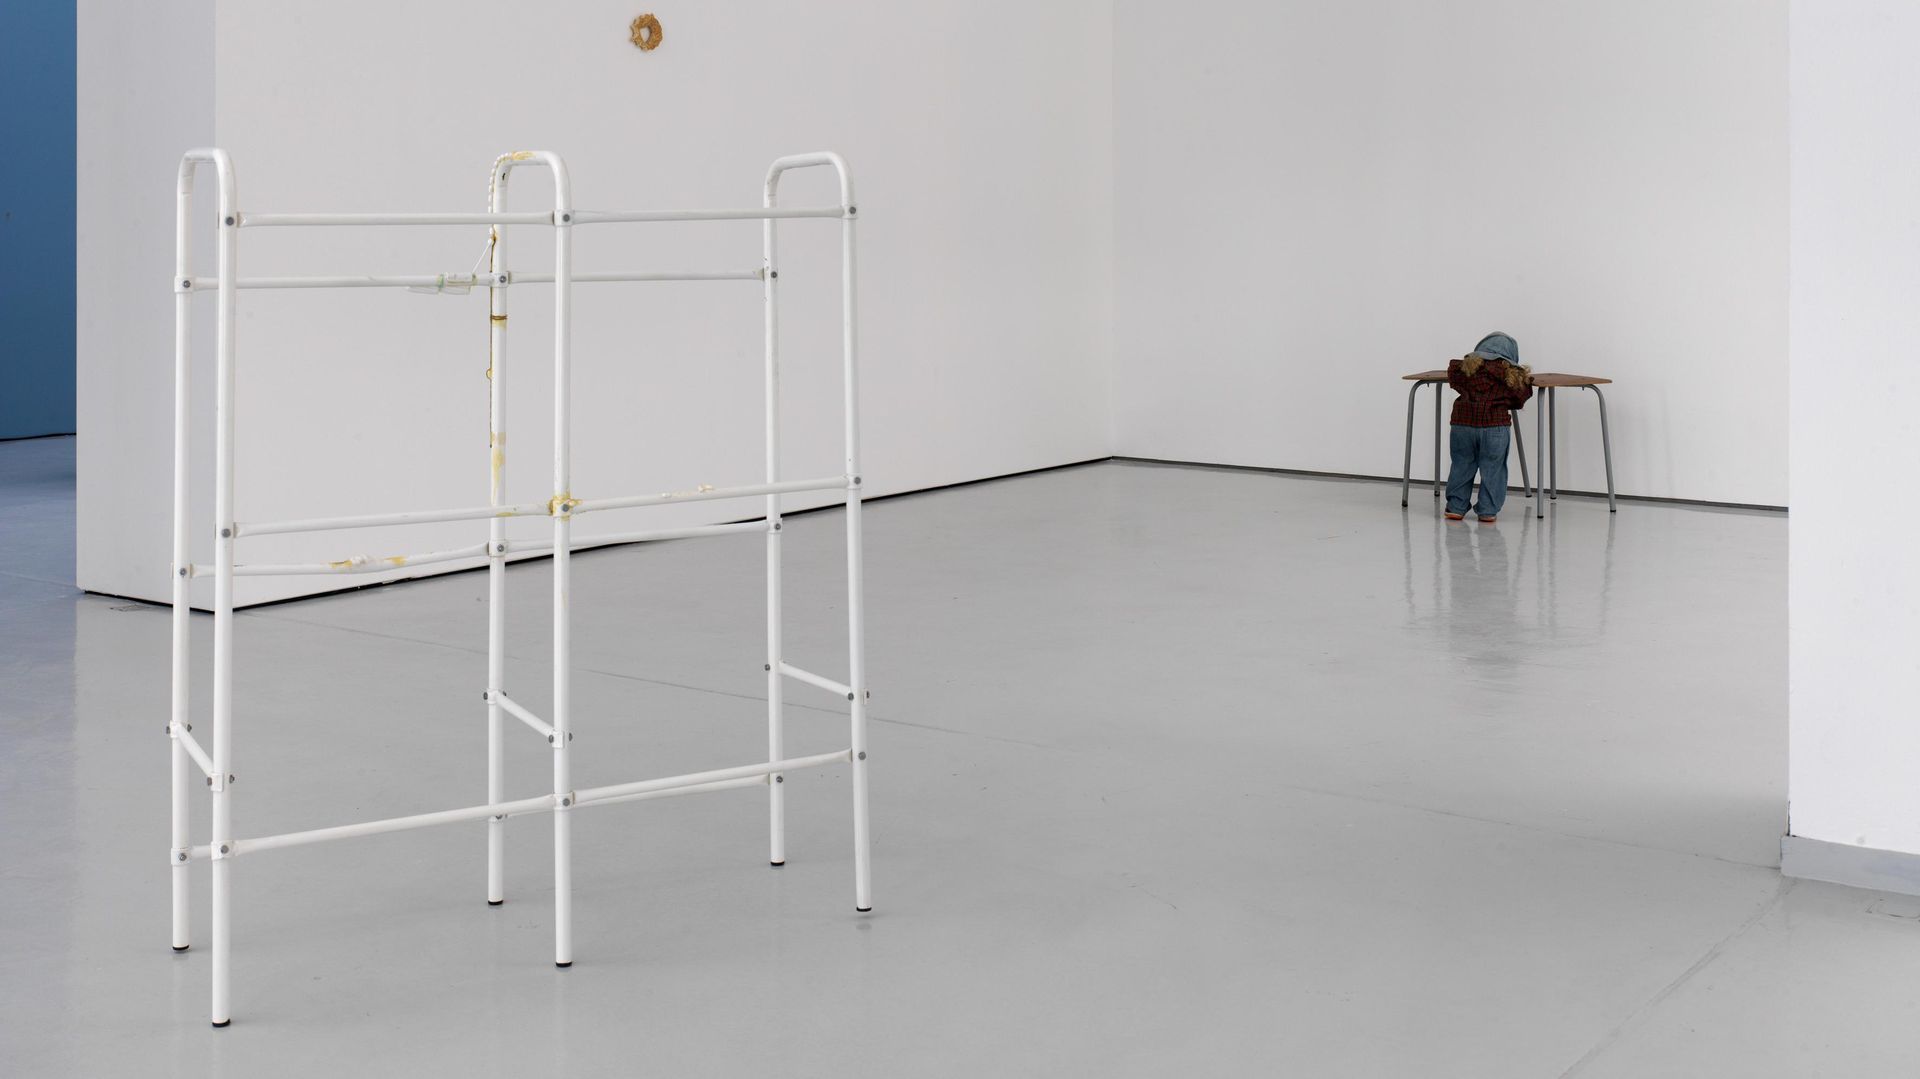 Thomas Rentmeister, Installationsansicht KAI 10 | Raum für Kunst, Foto: Achim Kukulies